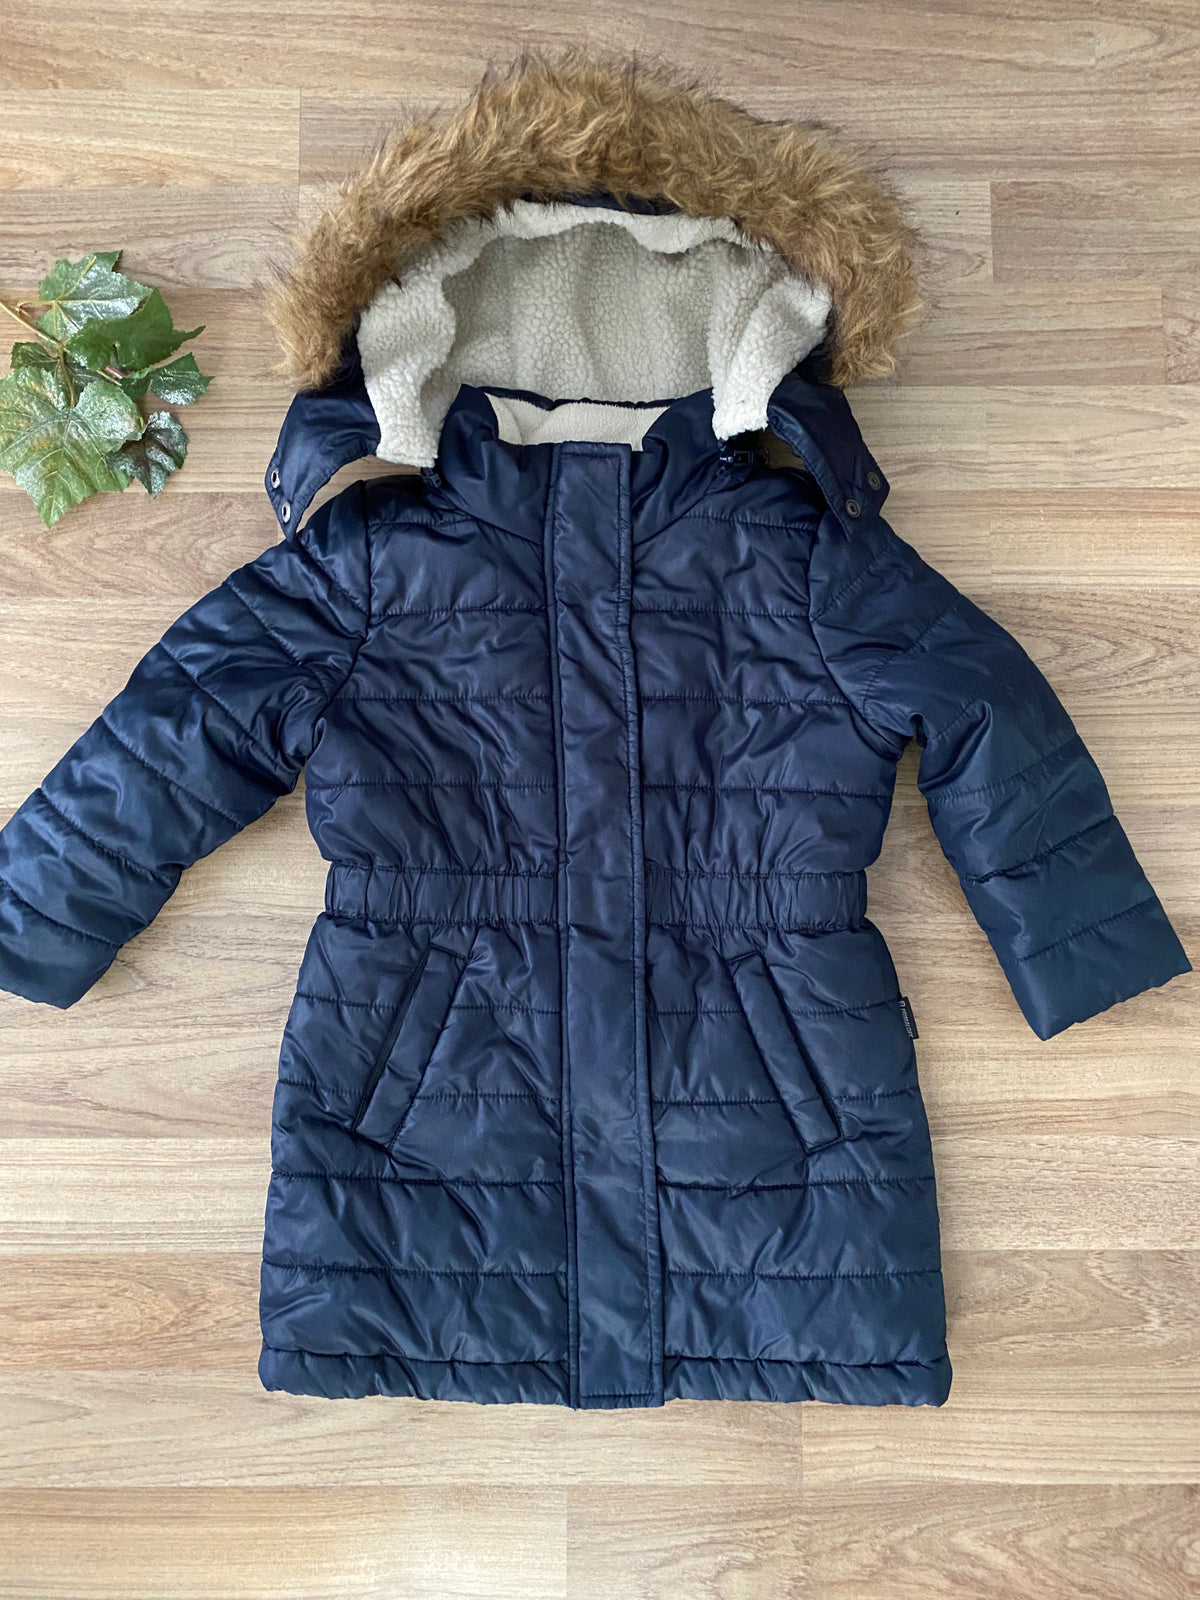 Full Zip Hooded Winter Coat (Girls Size 3)